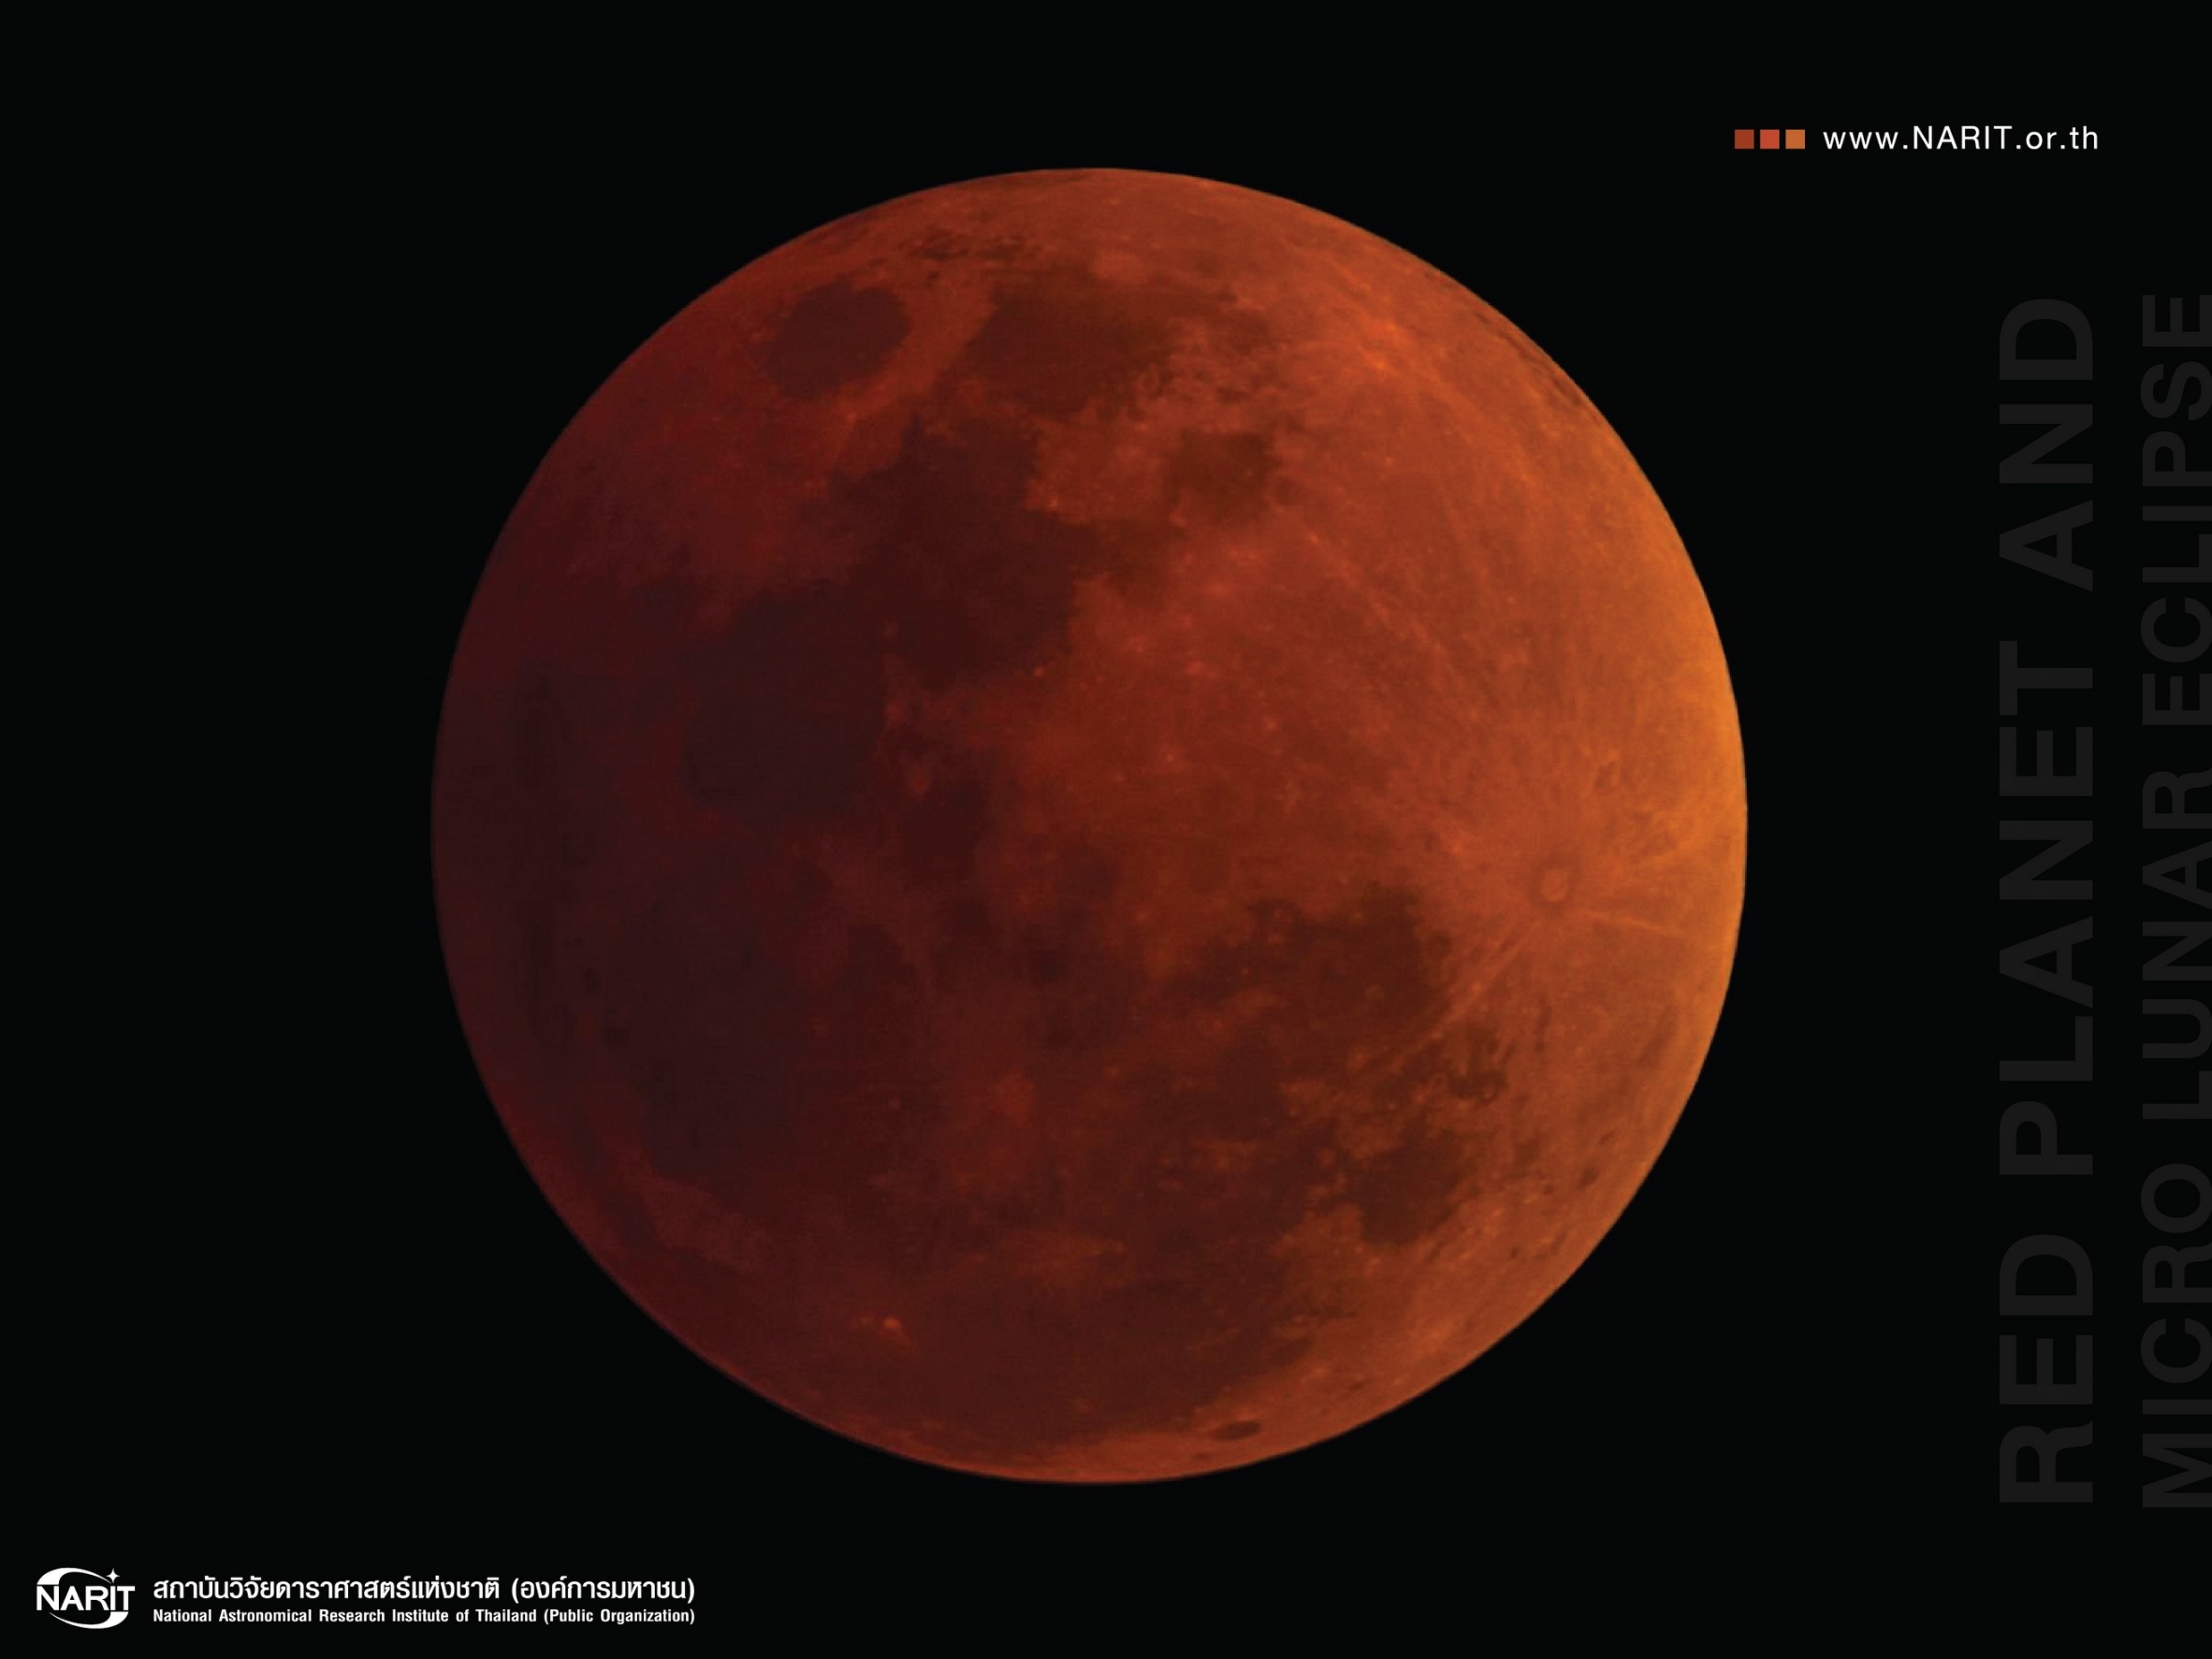 สดร. แนะเทคนิคถ่ายภาพ “ดวงจันทร์สีแดงอิฐ” จันทรุปราคาเต็มดวงไกลโลกที่สุดในรอบปี หลังเที่ยงคืน 27 ก.ค. 61